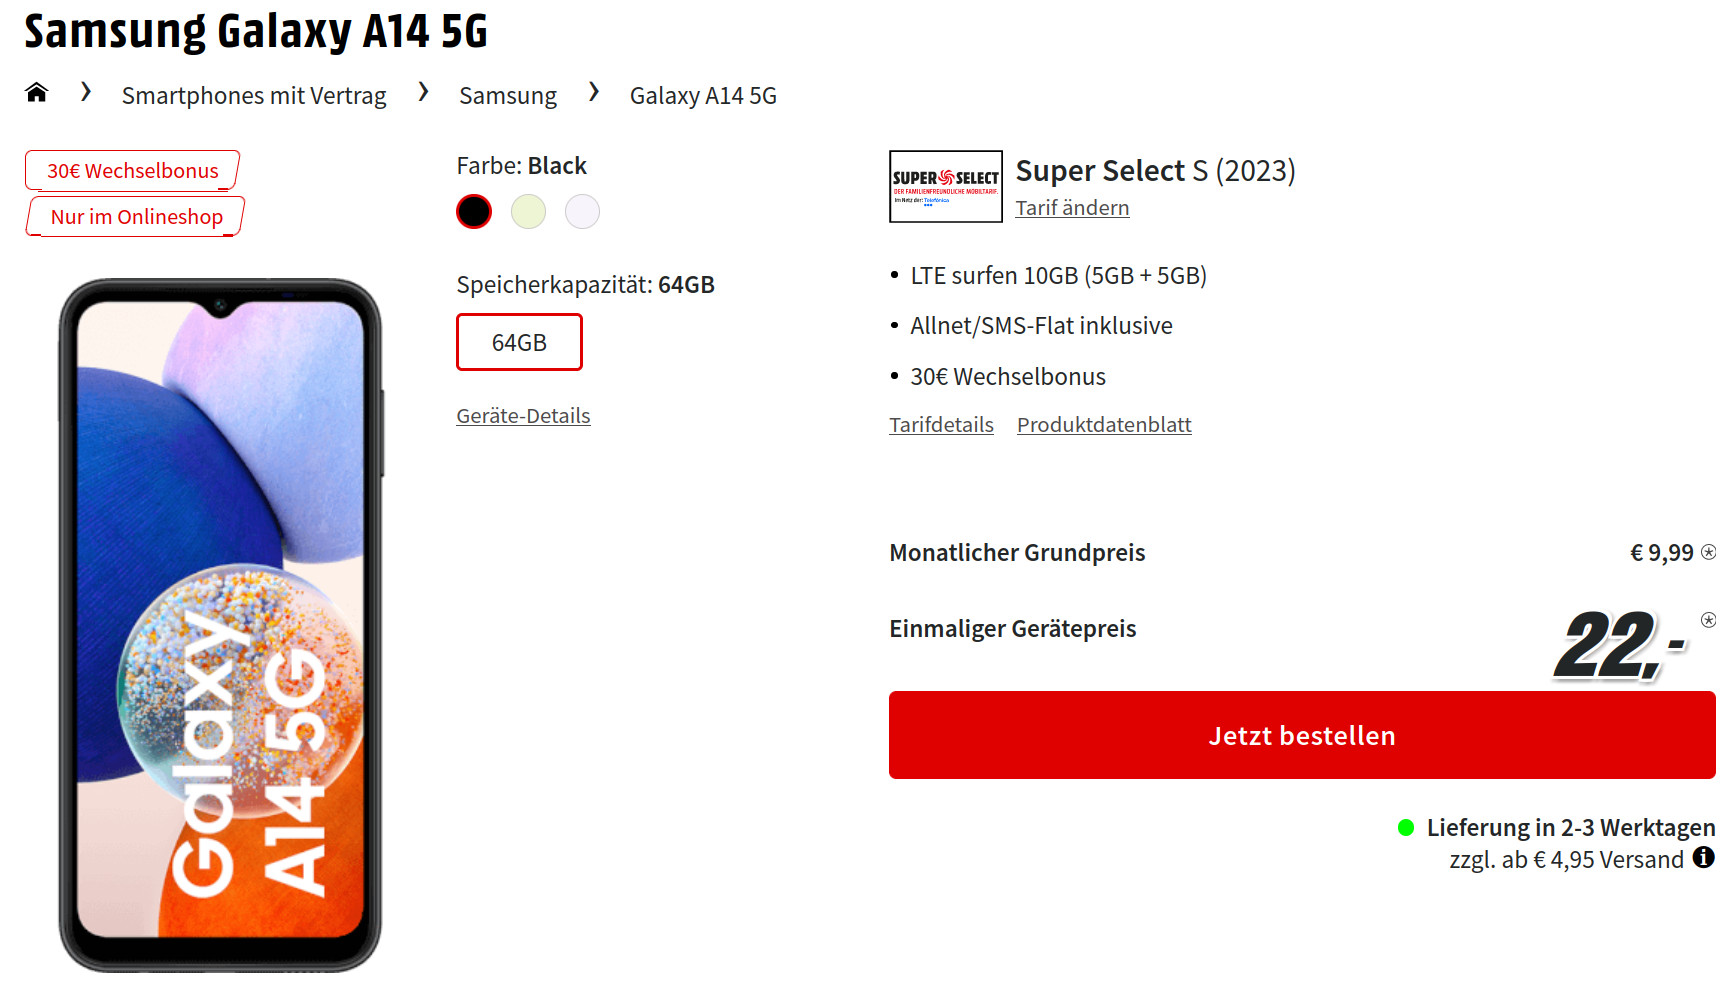 Galaxy 5G Tarife: Samsung Galaxy A14 5G für mtl. 9,99 Euro/Eff. 2,99 Euro